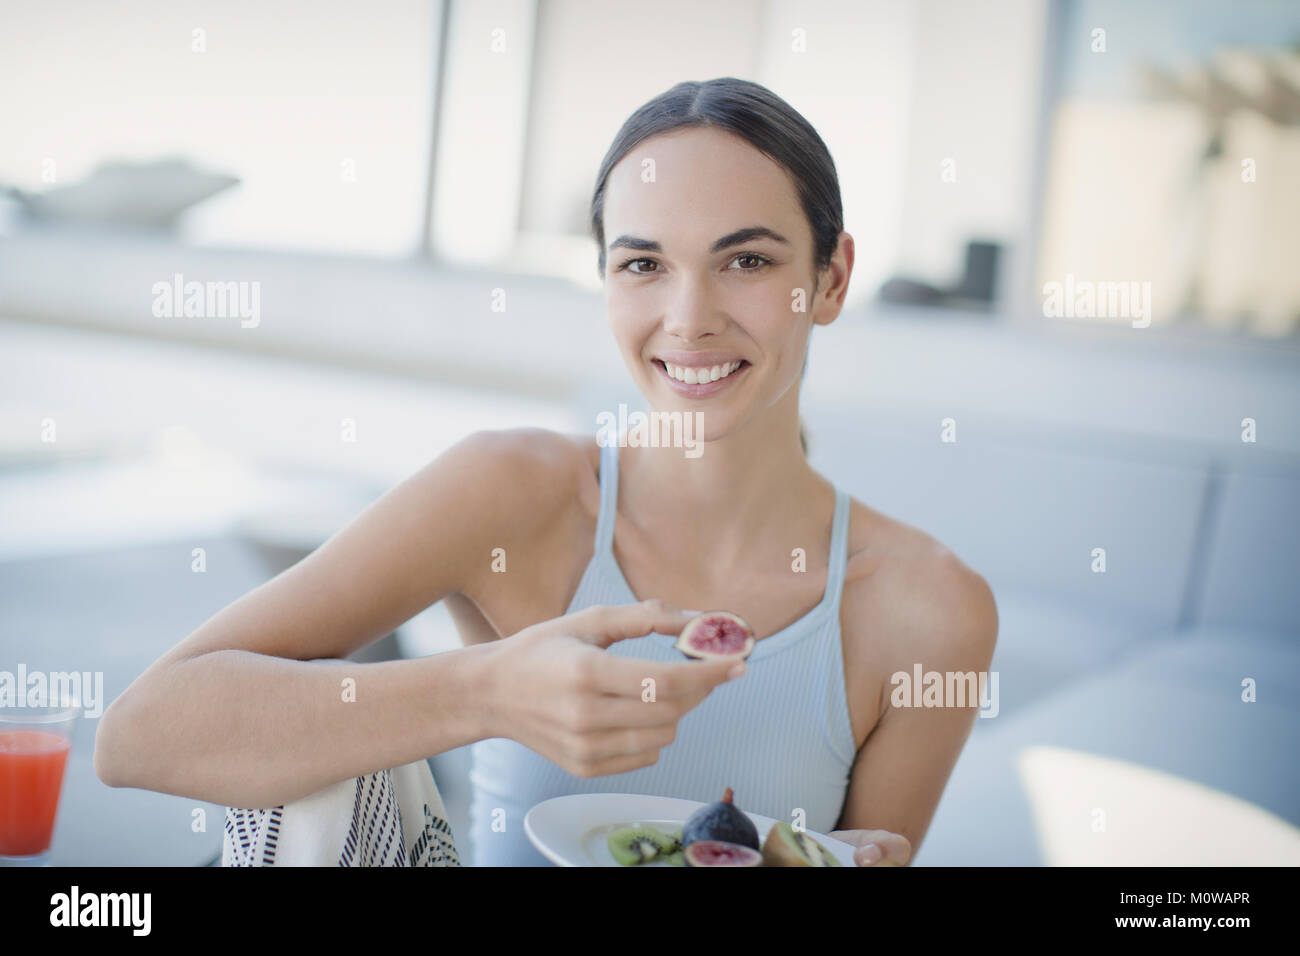 Retrato de una mujer morena, sonriente, seguro comer higos Foto de stock